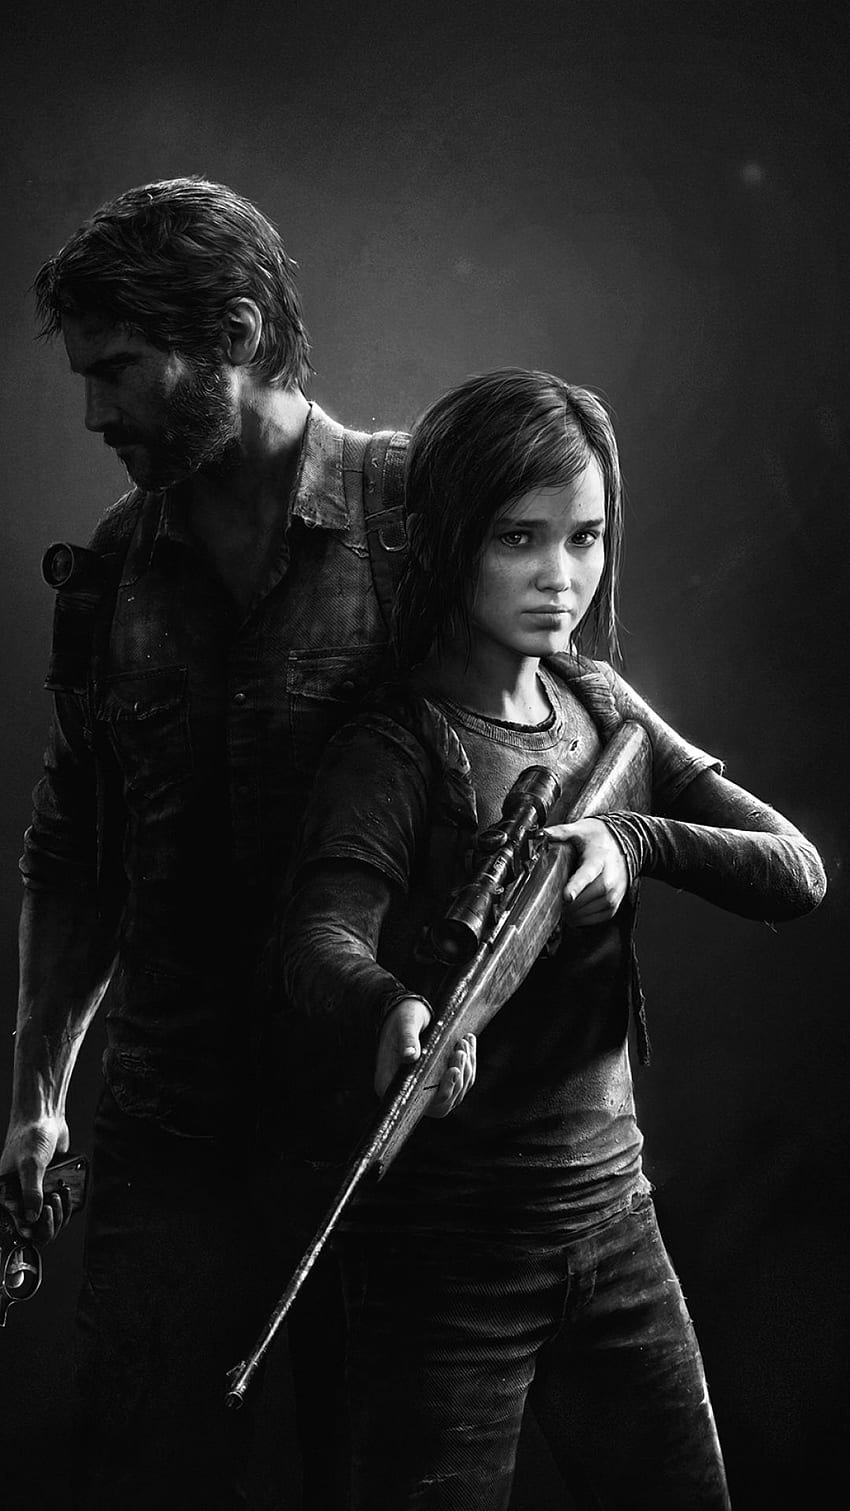 Tło Black Ops 2 dla urządzeń mobilnych — Last Of Us, The Last of Us, część 2 Tapeta na telefon HD